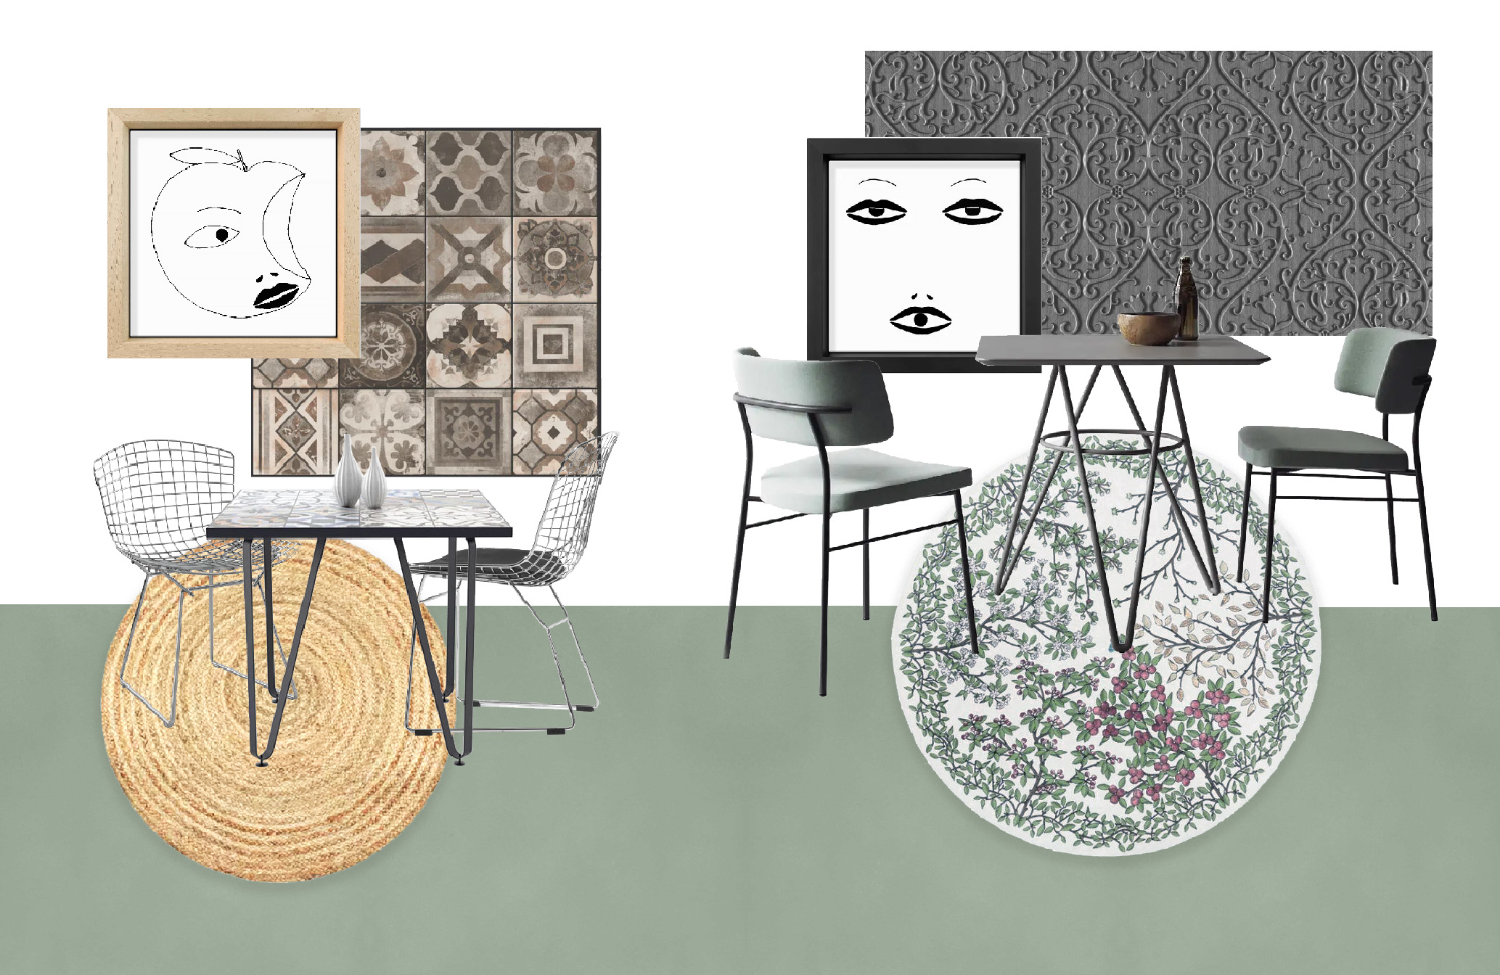 Composition de couleurs, textures, revêtements muraux et meubles pour créer un coin bistrot dans la cuisine, par Elles Interior Design.